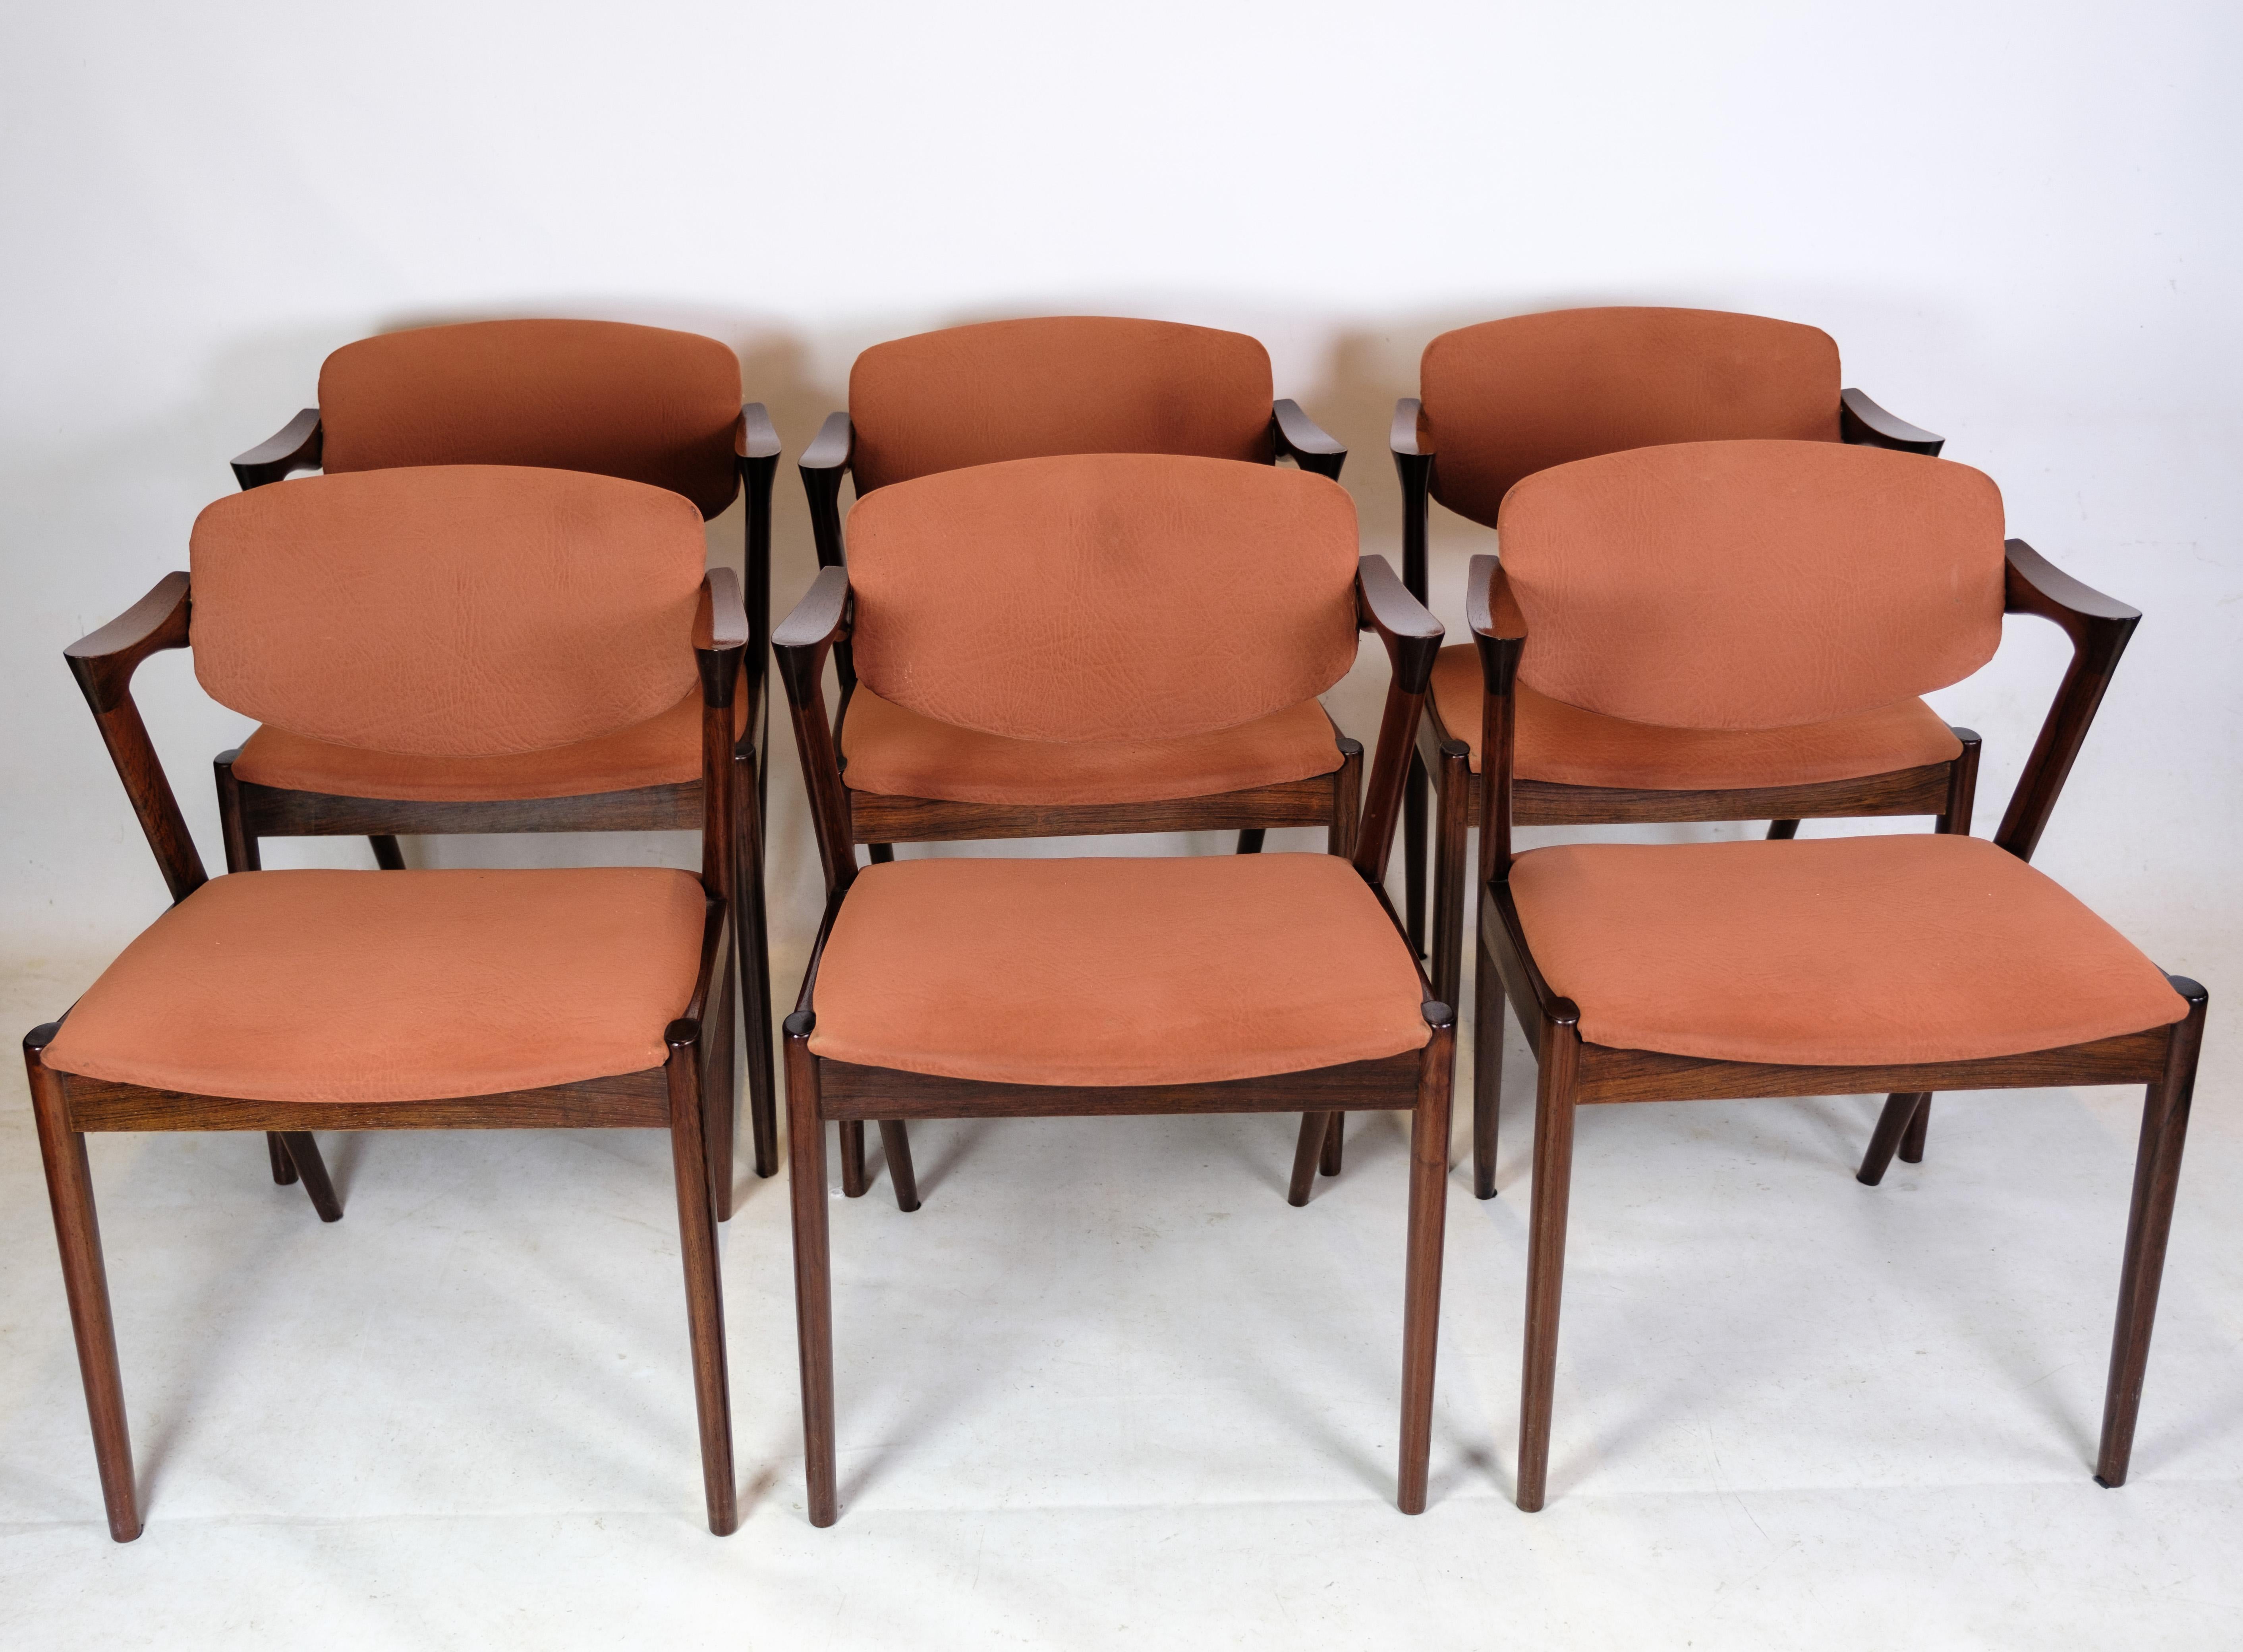 Dieses Set aus 6 Esszimmerstühlen ist eine hervorragende Darstellung des zeitlosen und eleganten Stils, der das dänische Möbeldesign der Mitte des 20. Jahrhunderts kennzeichnet. Bei den Stühlen handelt es sich um das Modell 42, das von dem bekannten